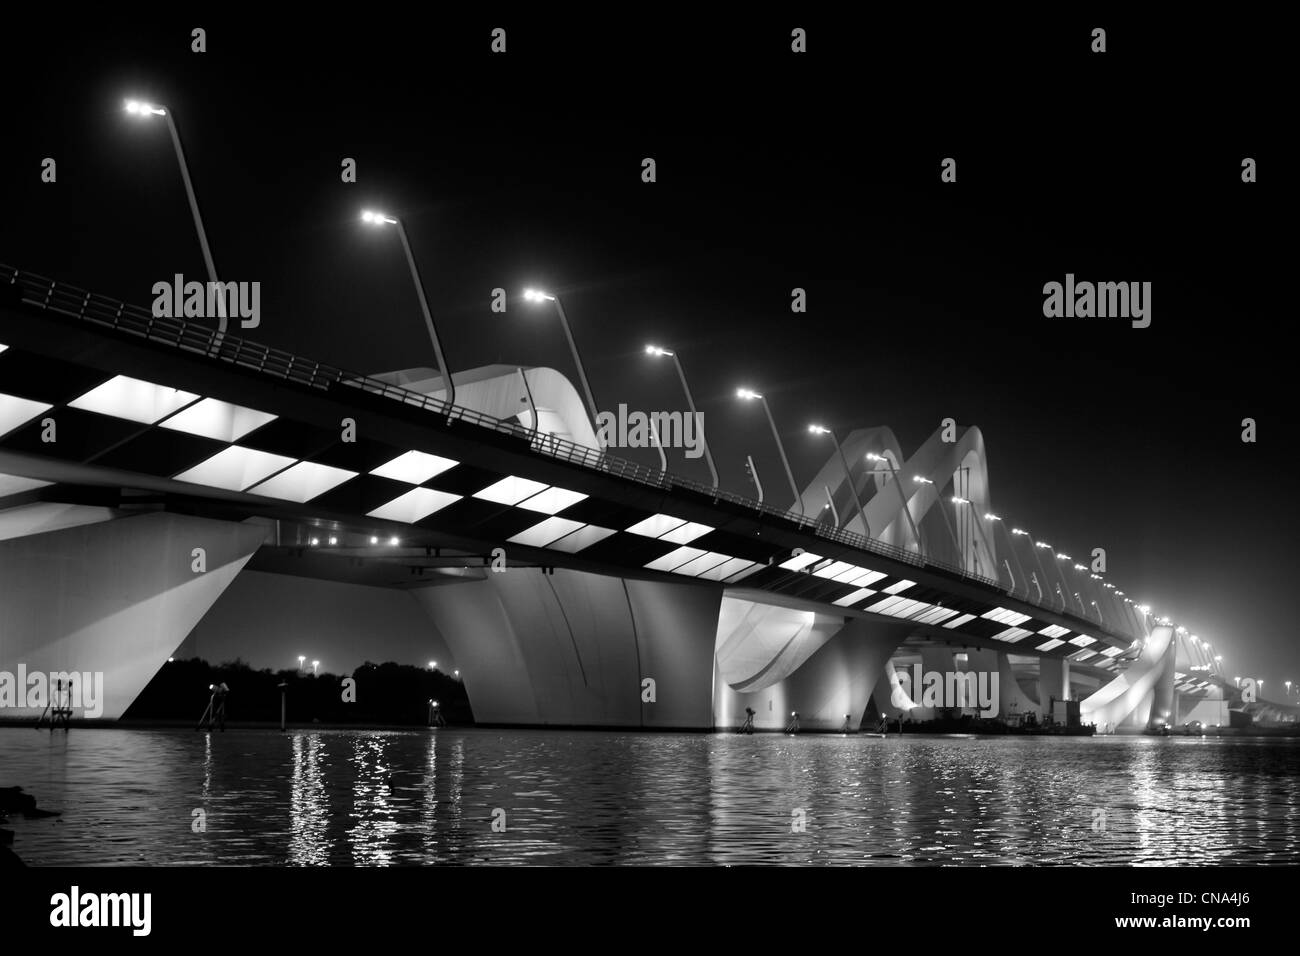 El puente Sheikh Zayed, diseñada por Zaha Hadid, en Abu Dhabi Foto de stock